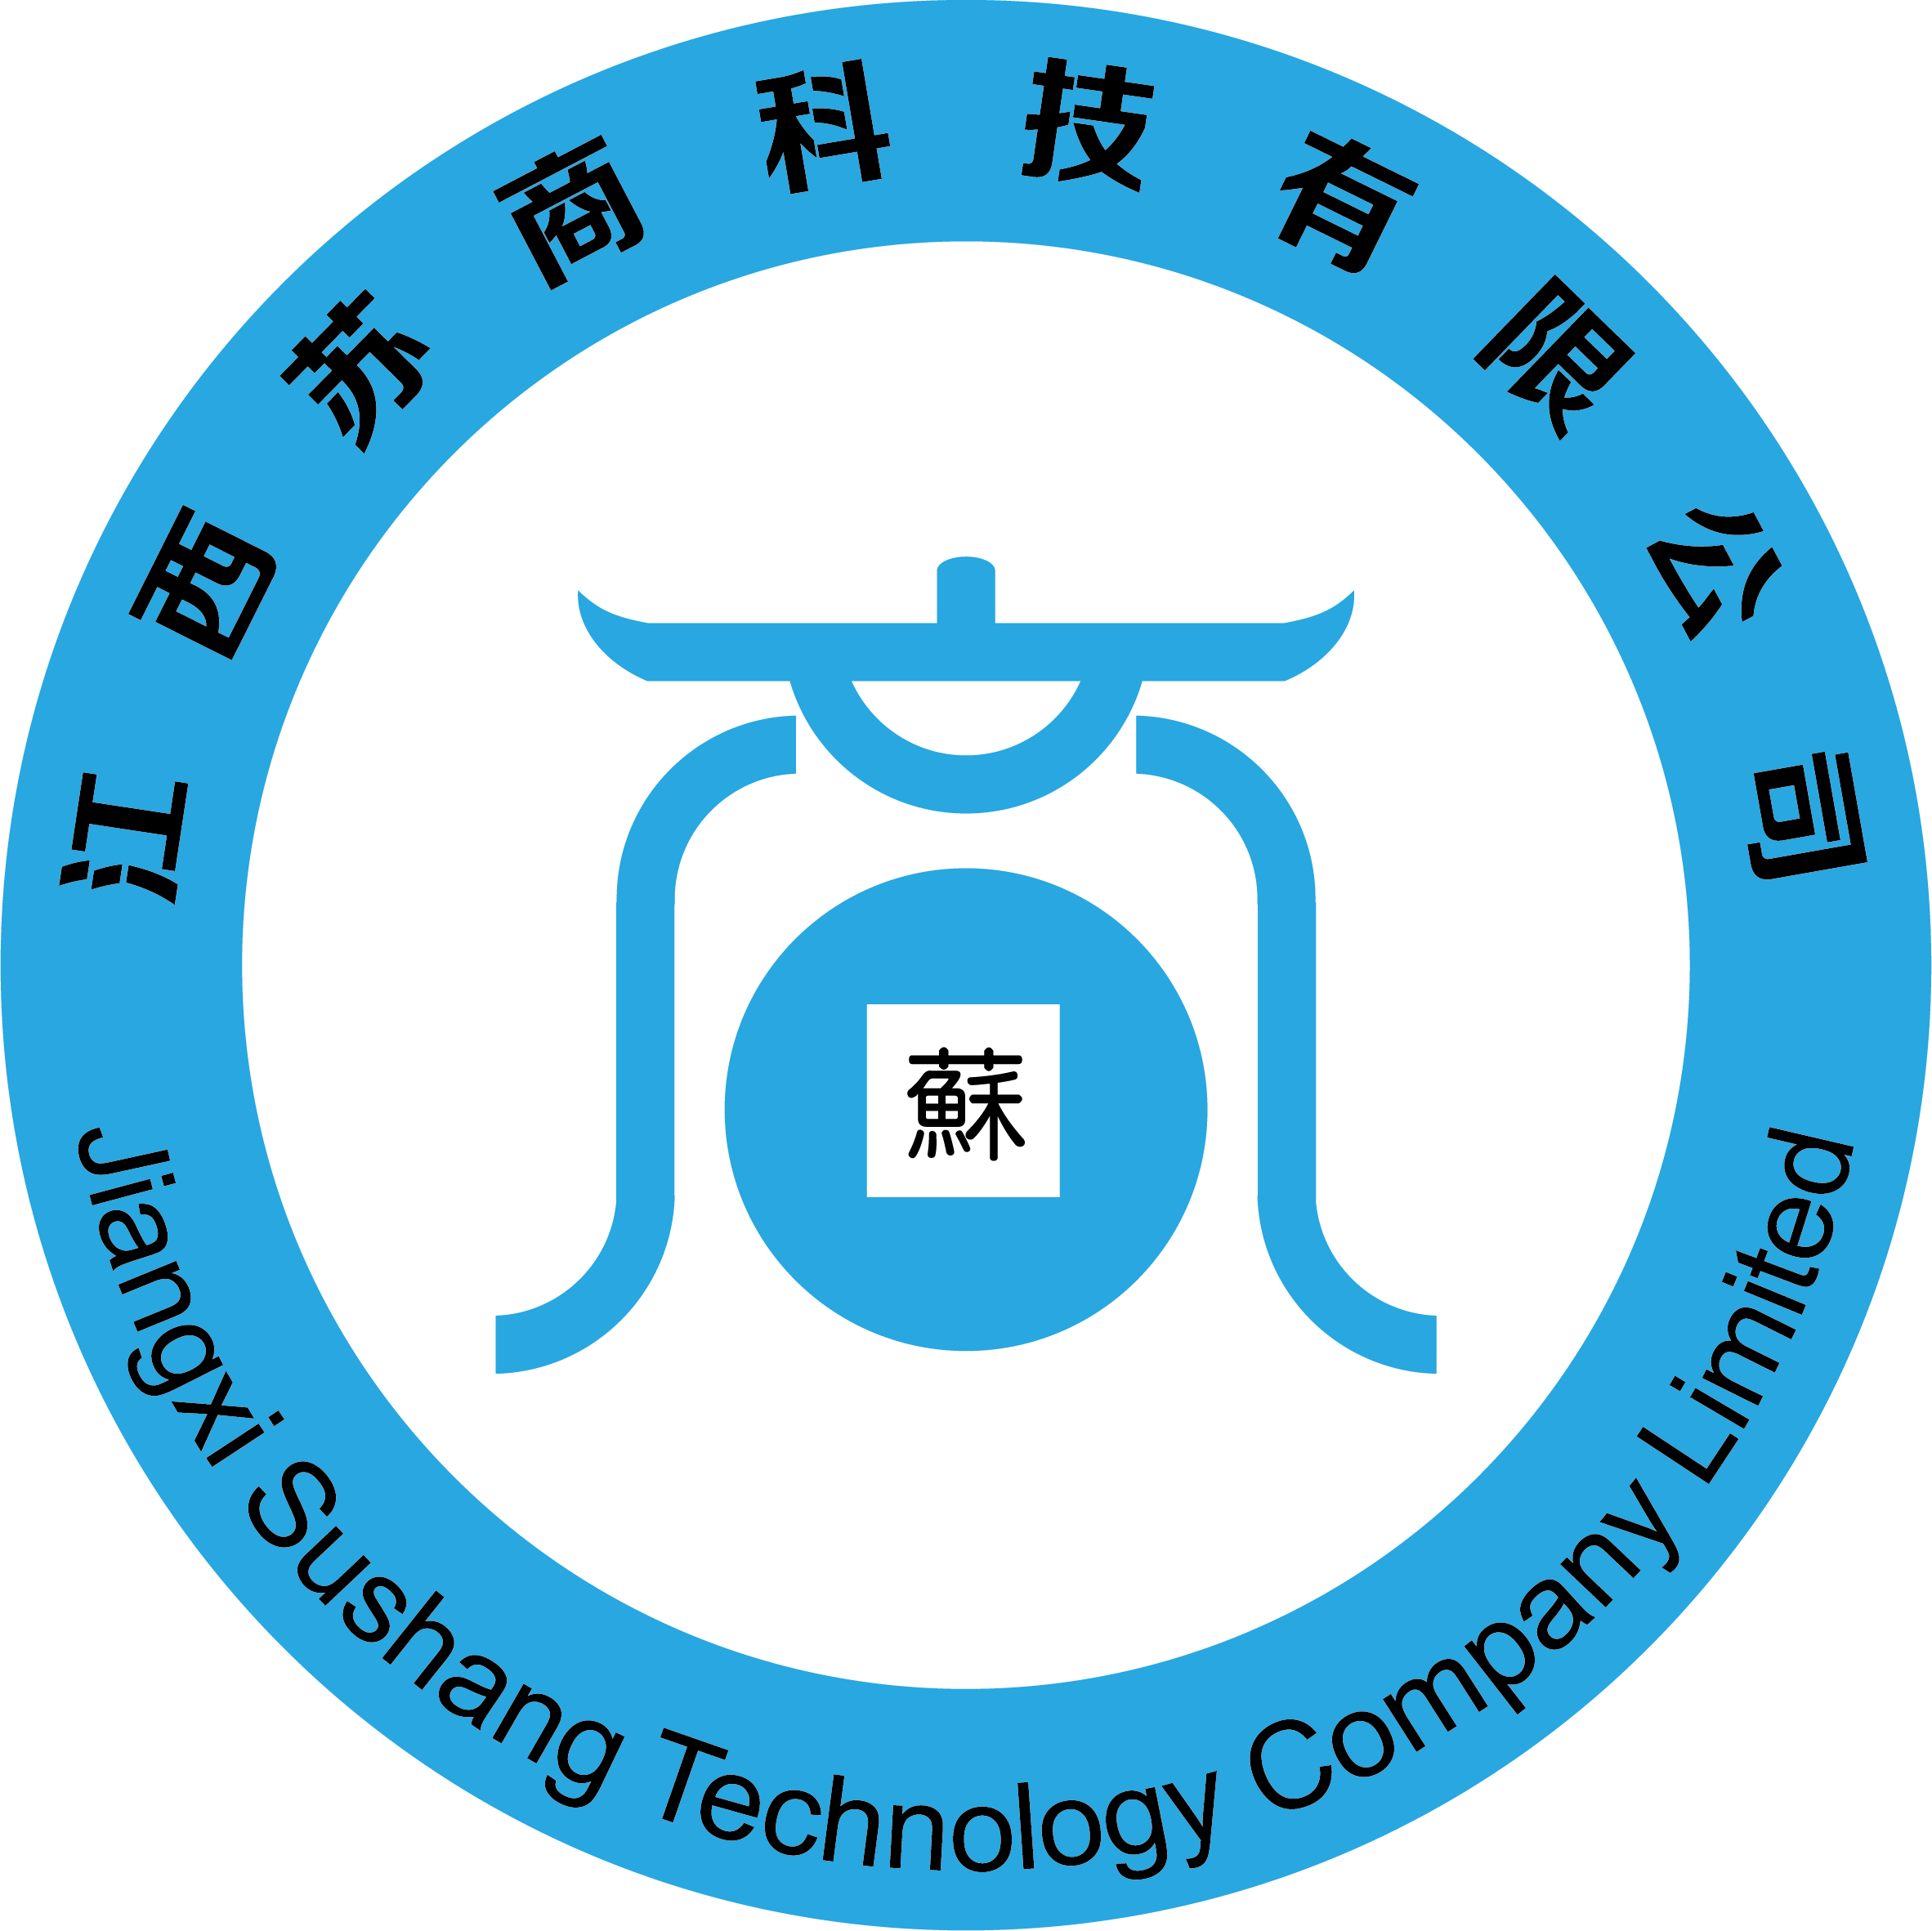 江西苏商科技有限公司, 公司logo,蓝色突出科技,中央设计的"商"字